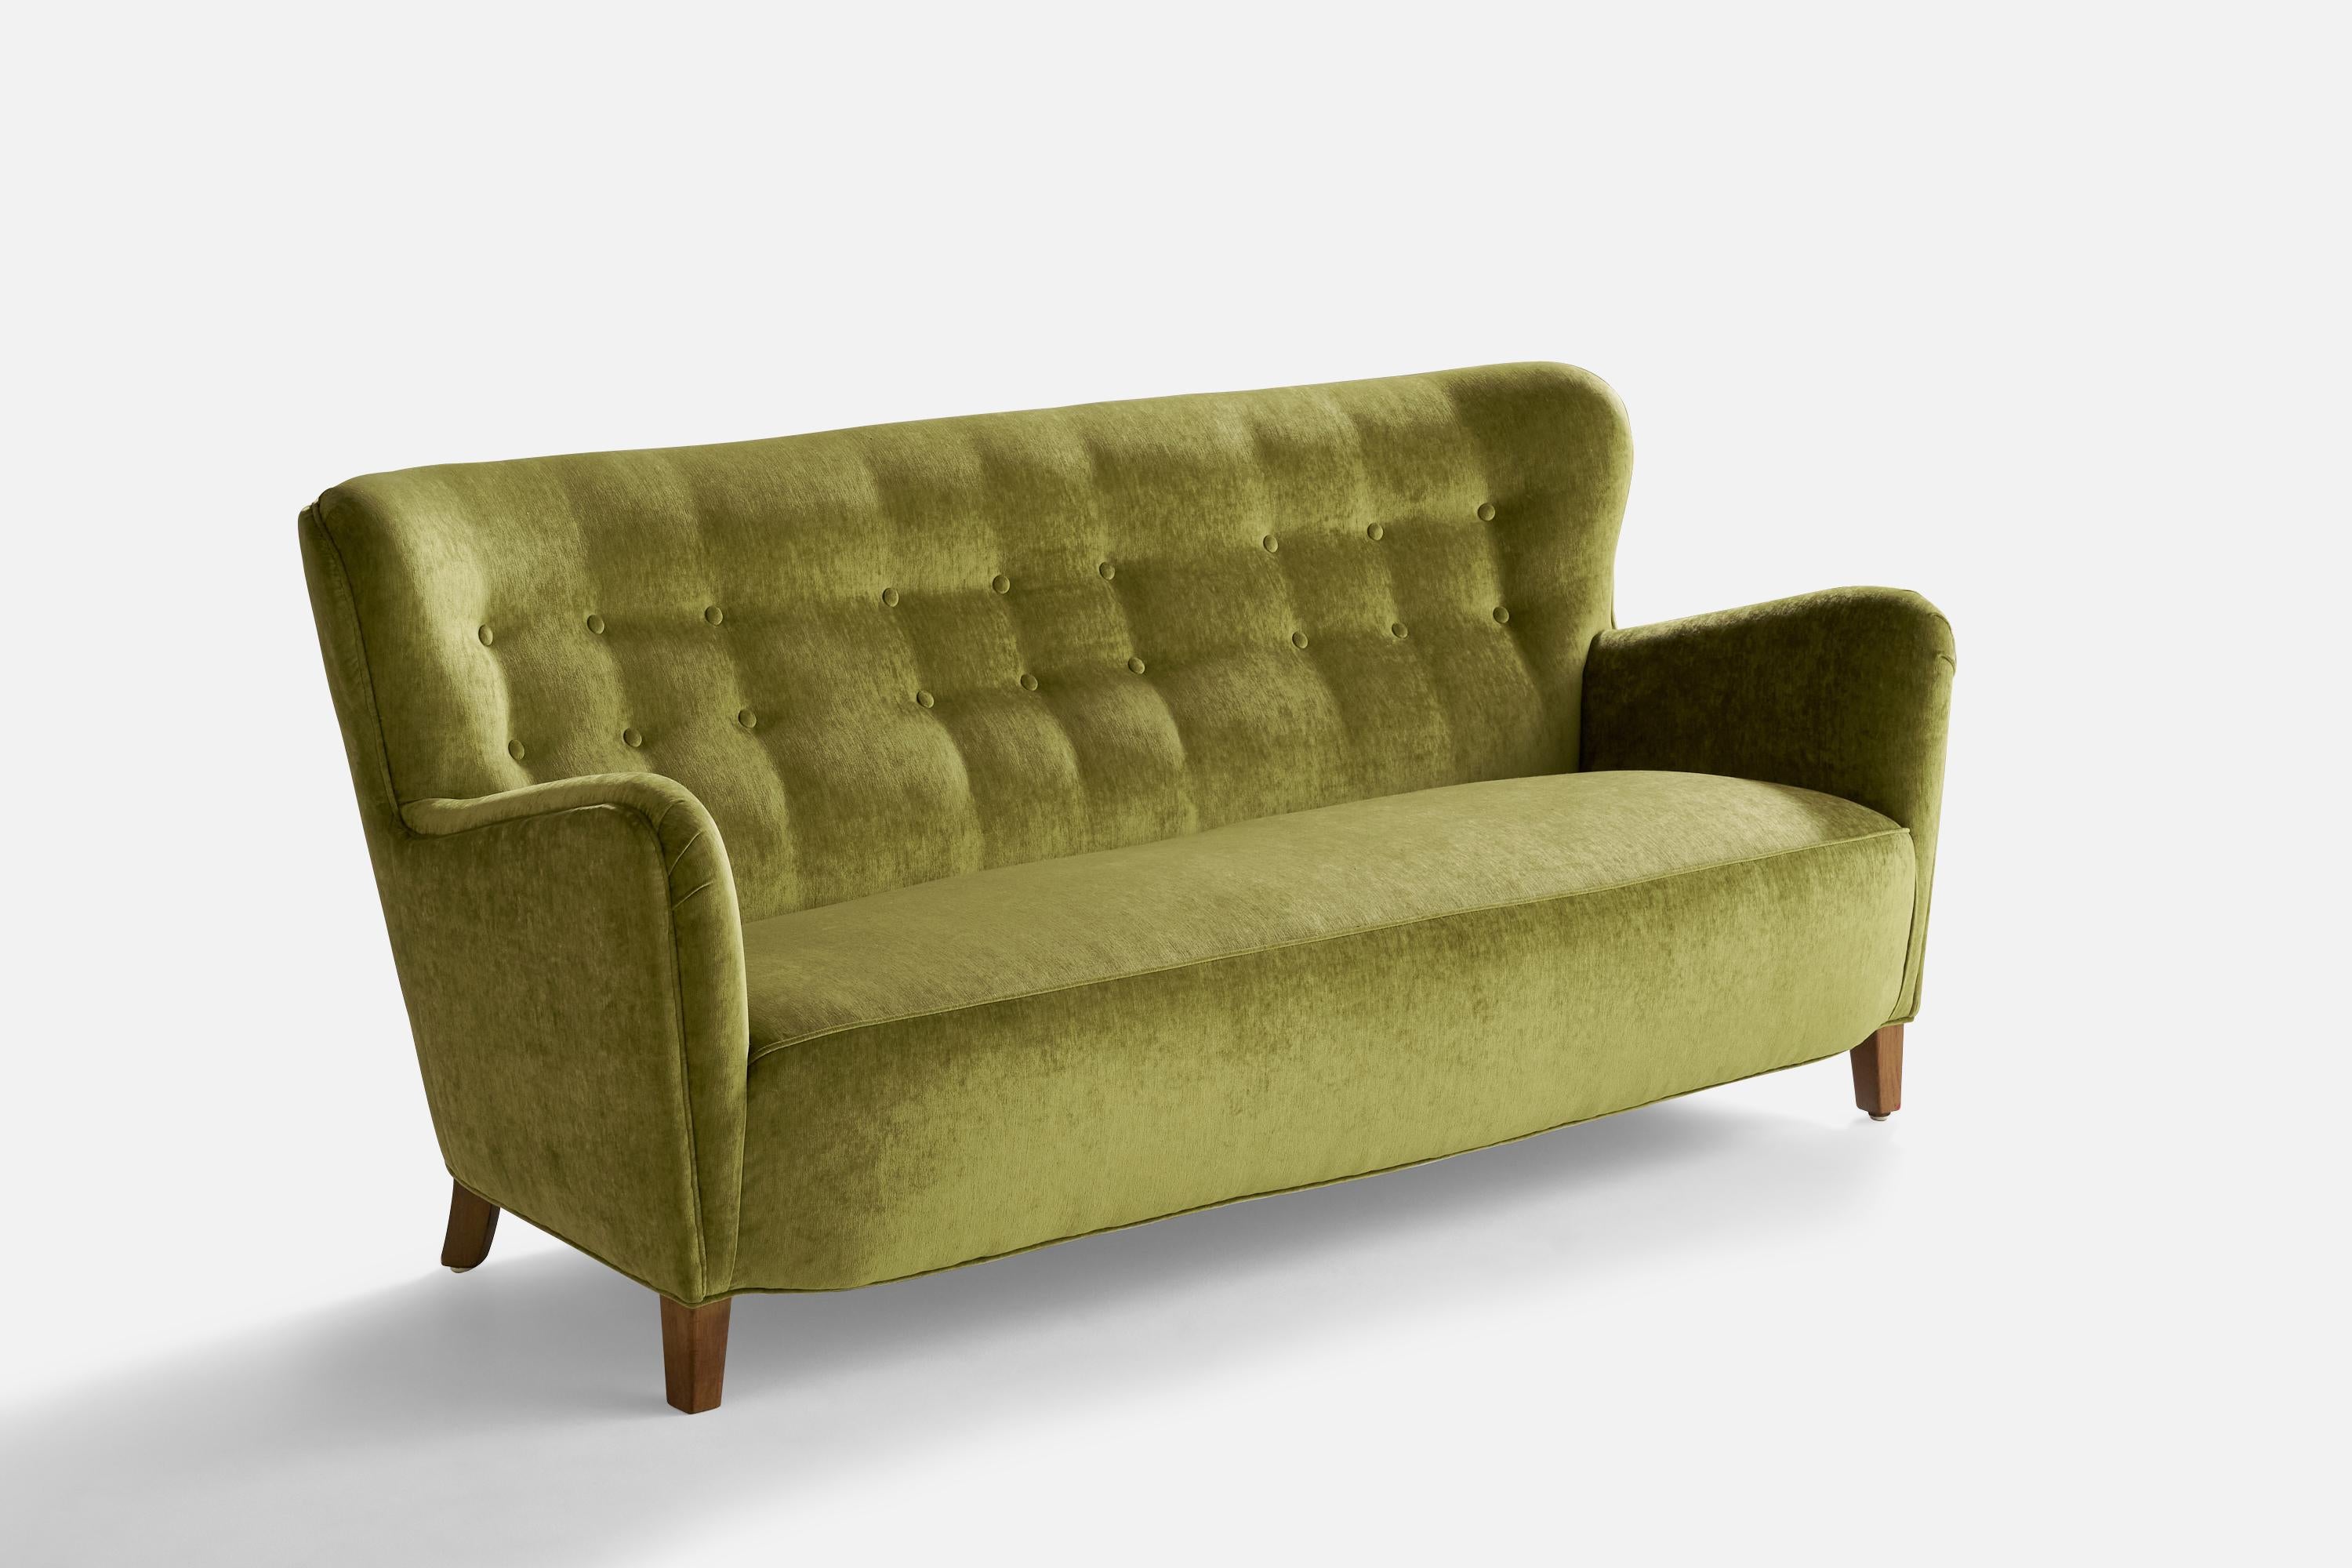 Ein Sofa aus grünem Samt und Holz, entworfen und hergestellt in Dänemark, 1940er Jahre.

Sitzhöhe: 14.75